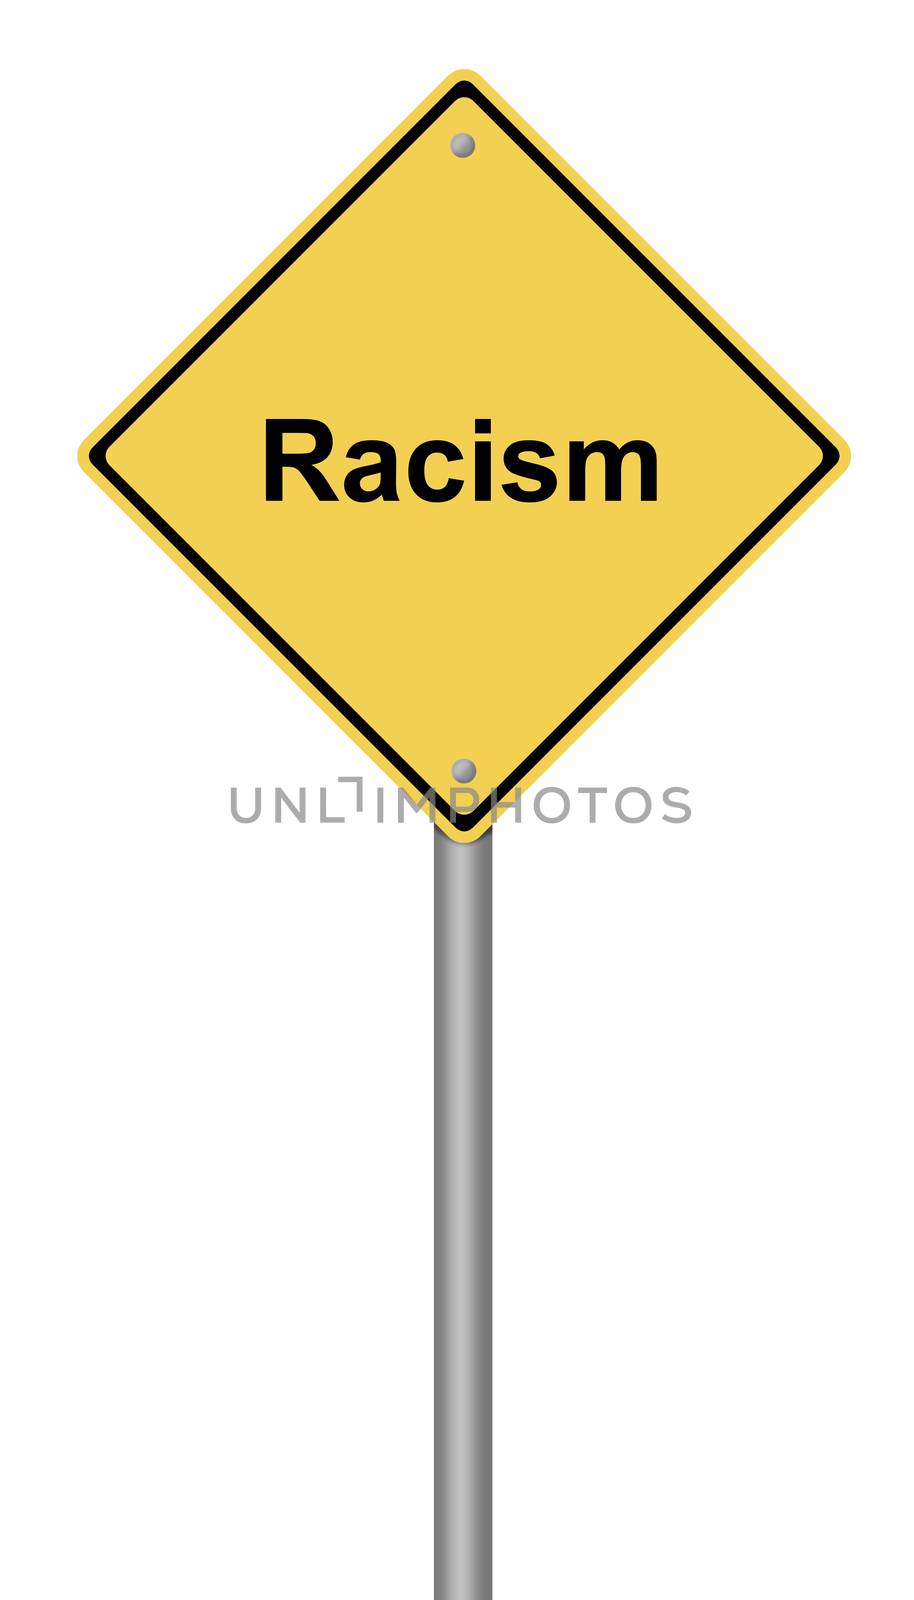 Racism by hlehnerer